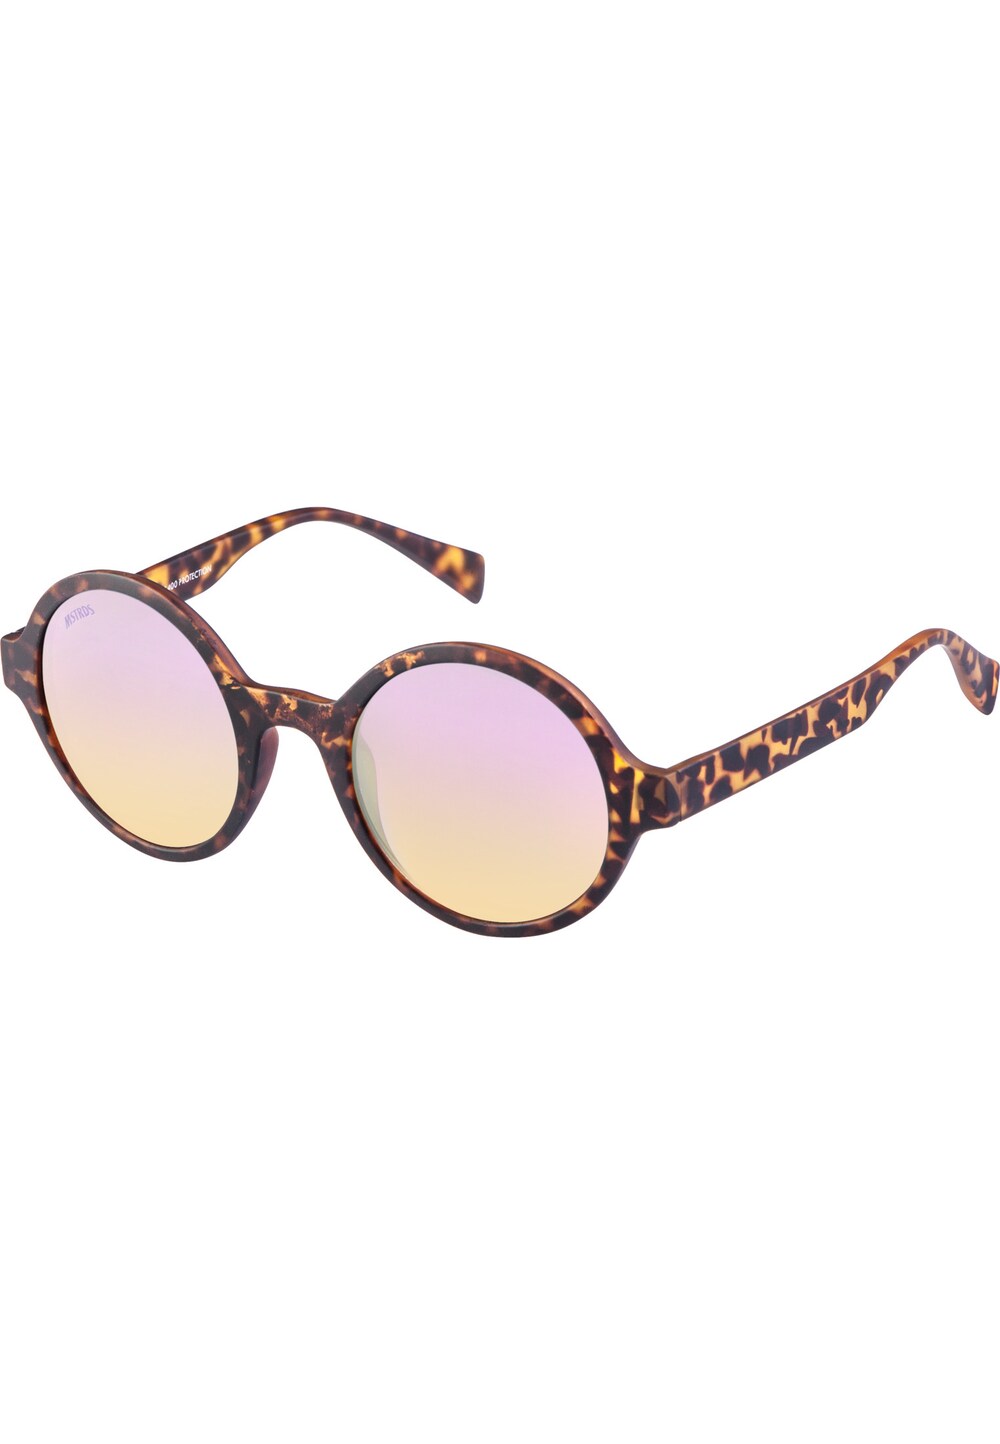 Солнечные очки MSTRDS Retro Funk, коньячный/темно-коричневый/светло-розовый